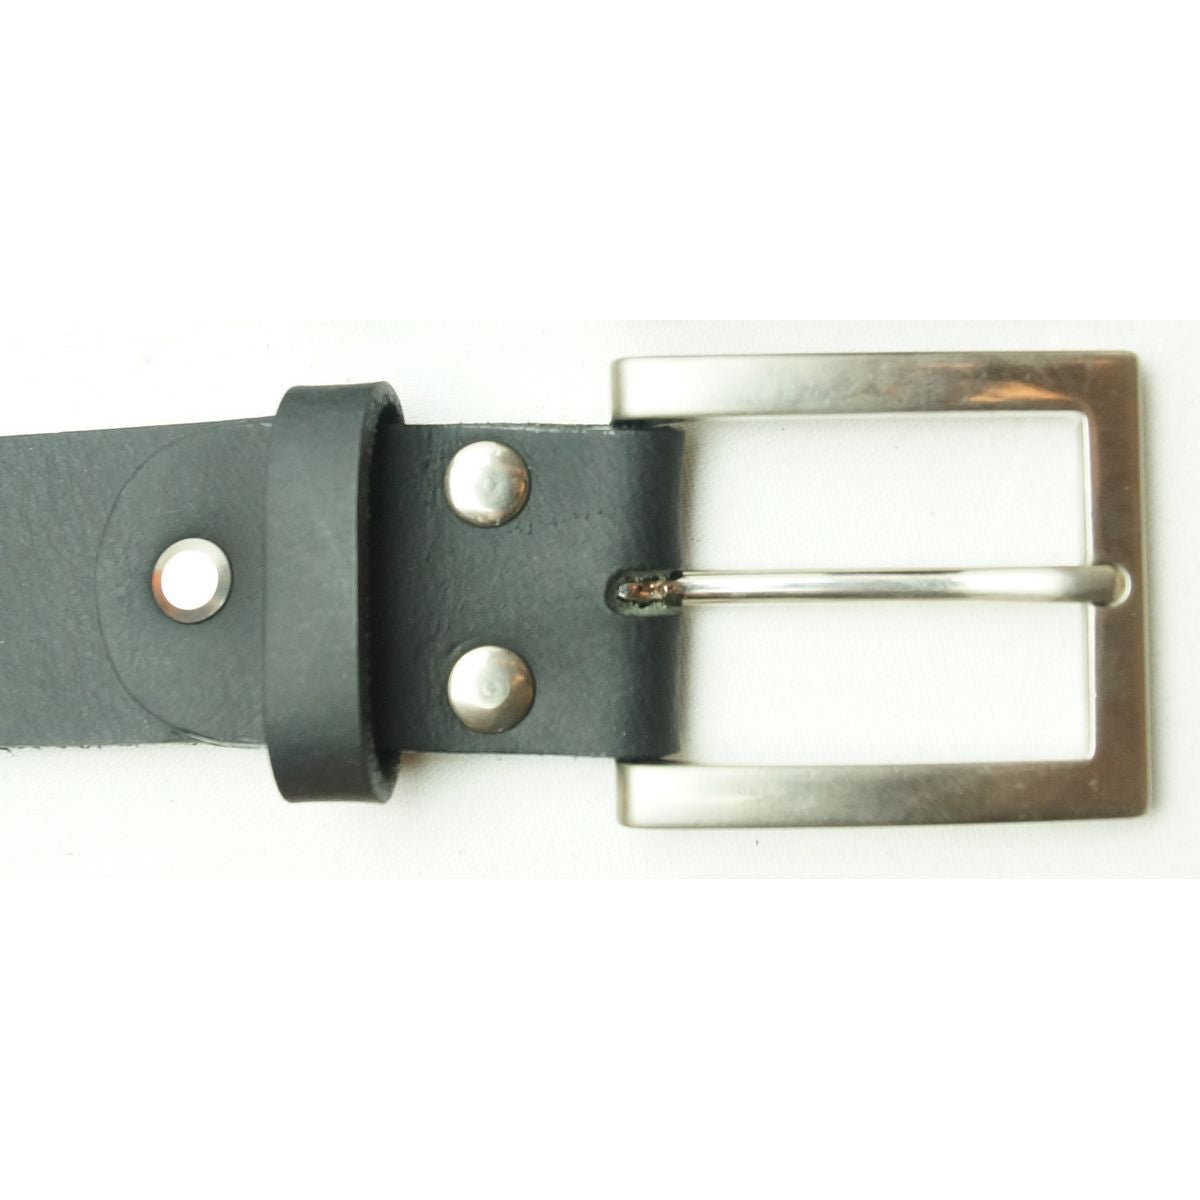 Læder Bælte - John - Sort - Bælte fra The Leather Belt Co. hos The Prince Webshop